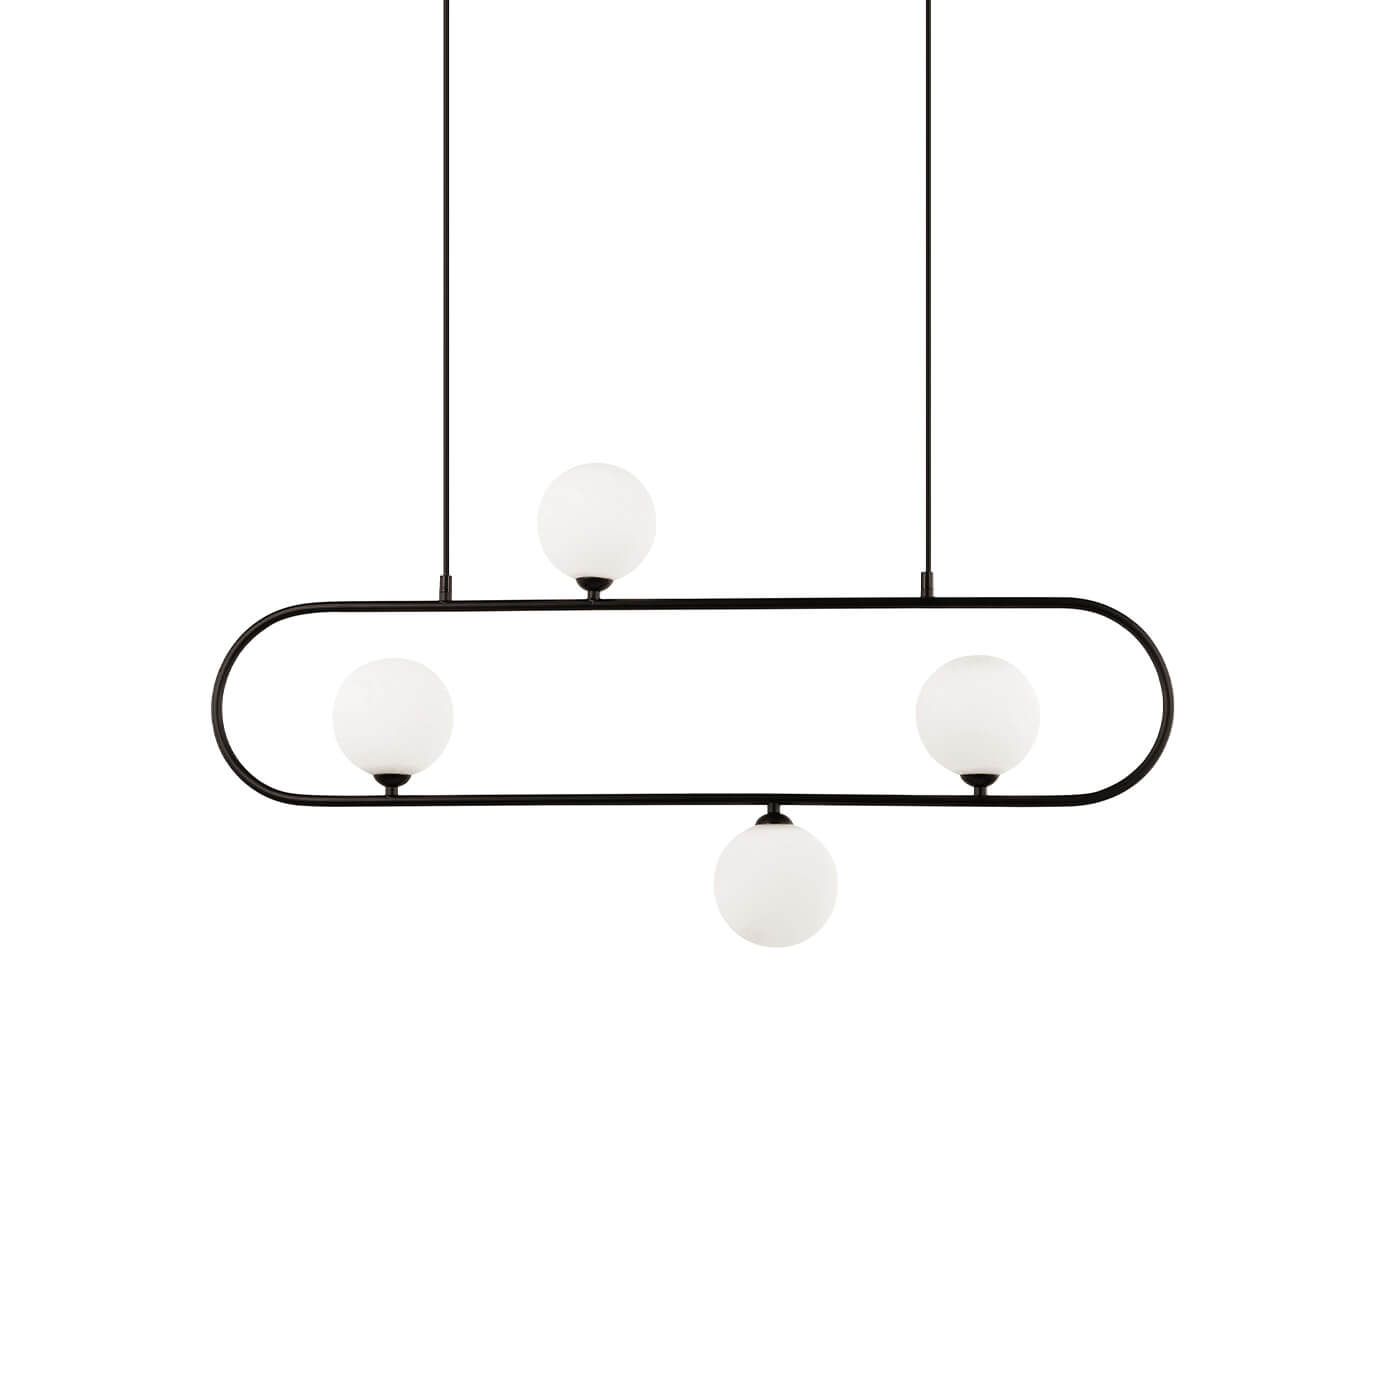 Cauti o lampa suspendata FANCY S3L din metal cu globuri de sticla, design modern, pentru living, dining sau dormitor din colectia de lustre si candelabre Domicilio?